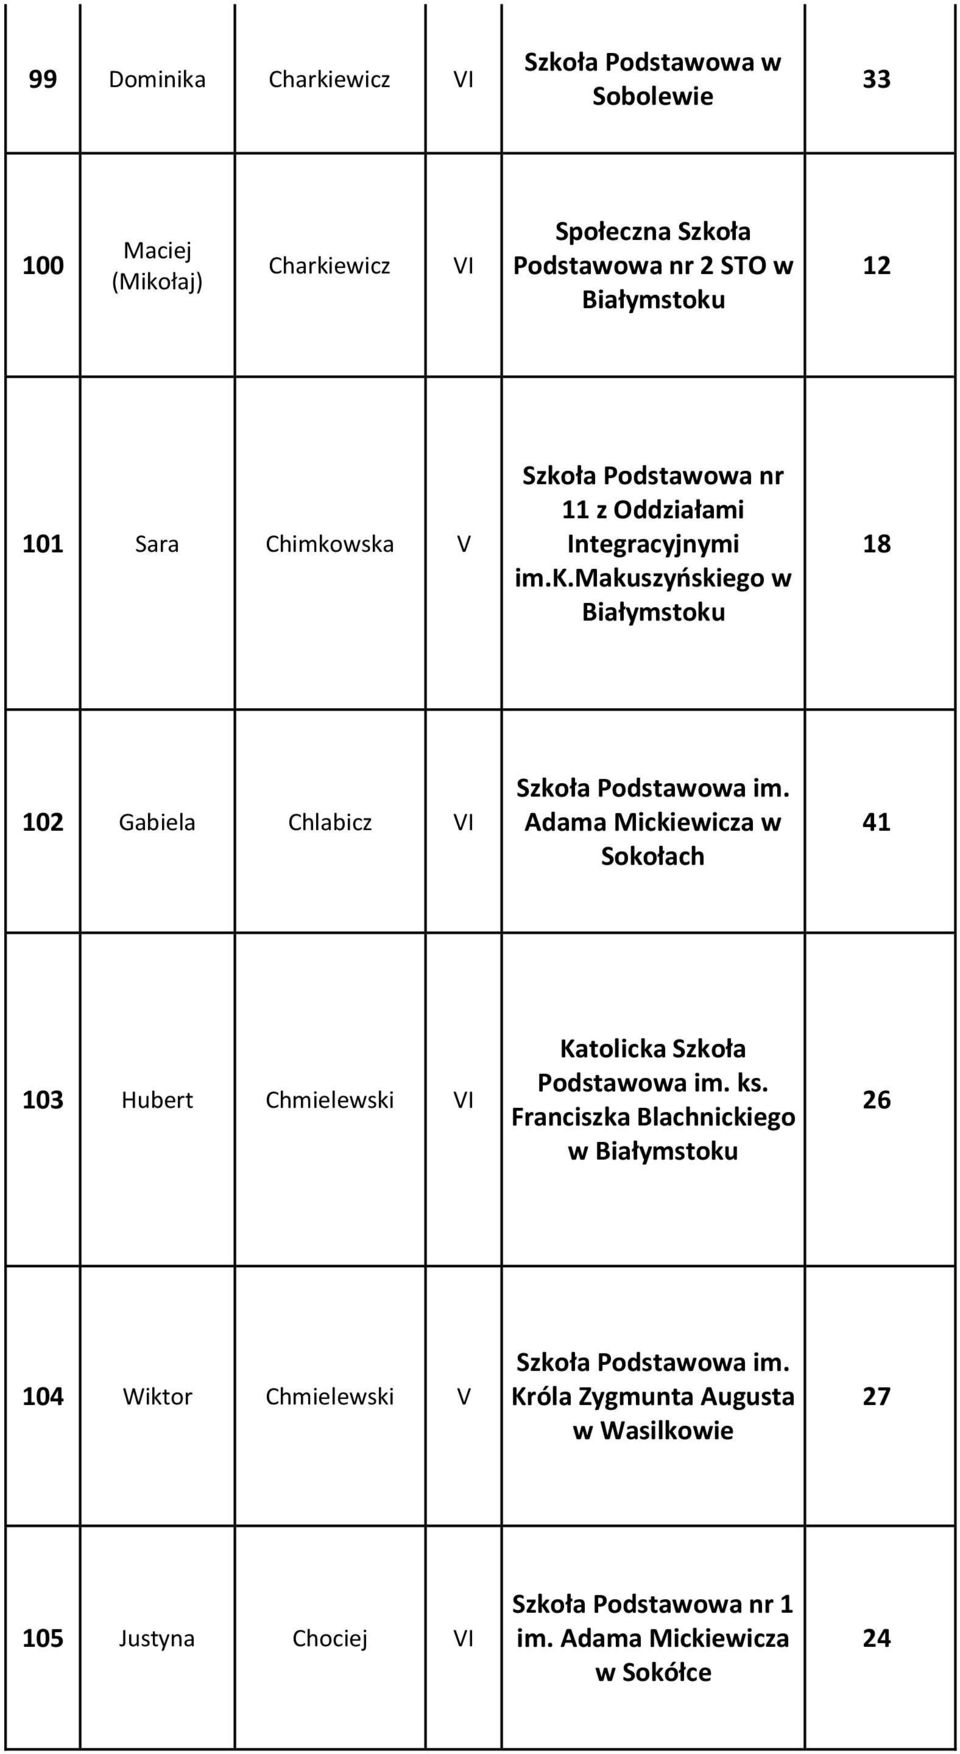 wska V 11 z Oddziałami Integracyjnymi im.k.makuszyńskiego w 18 102 Gabiela Chlabicz VI Adama Mickiewicza w Sokołach